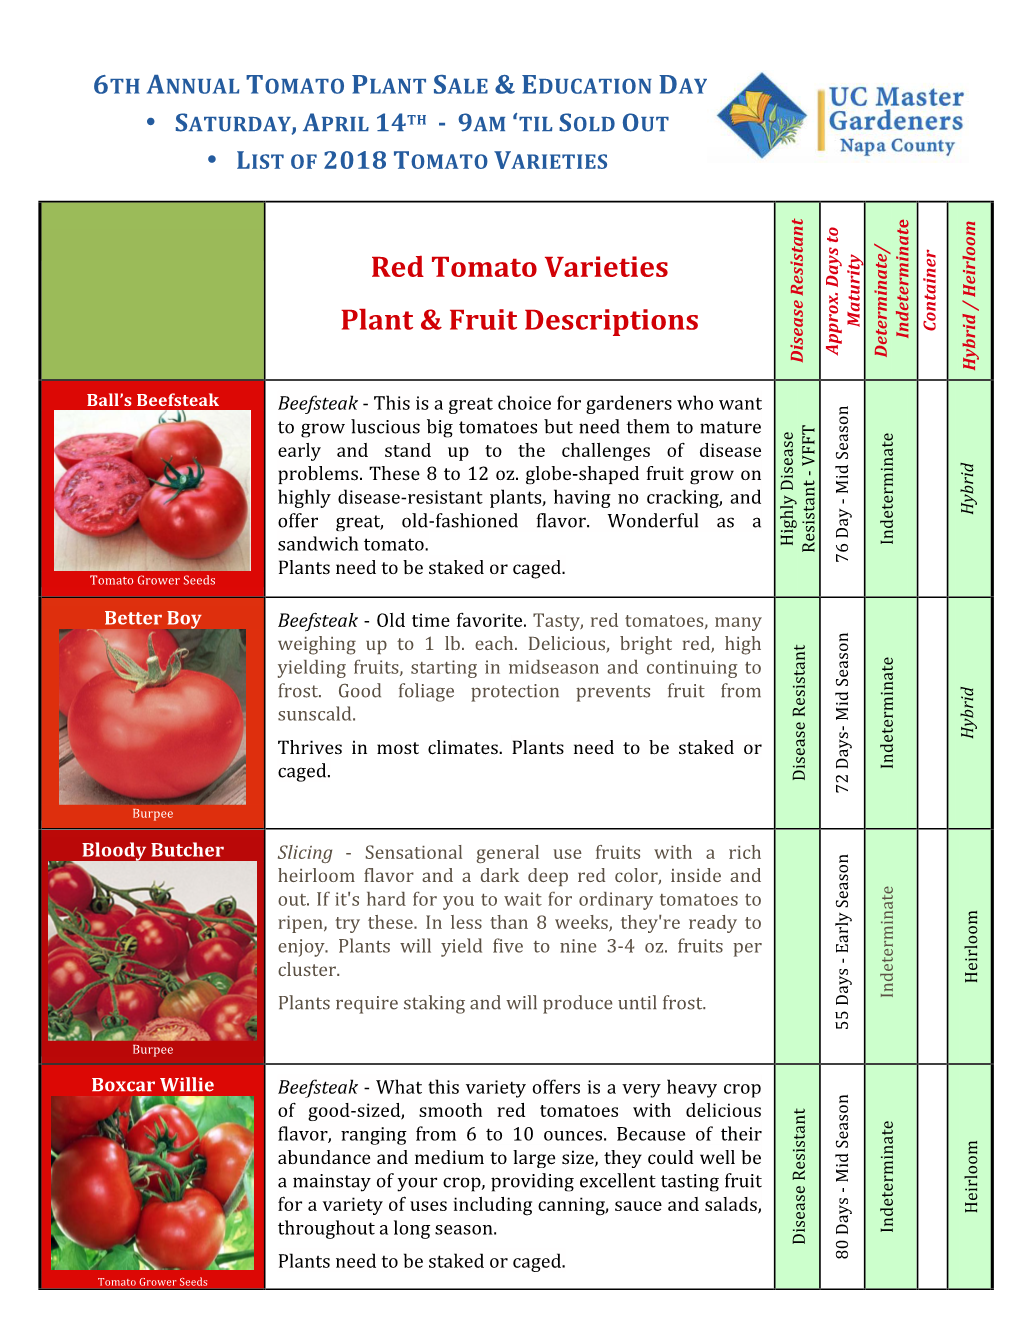 Red Tomato Varieties Plant & Fruit Descriptions